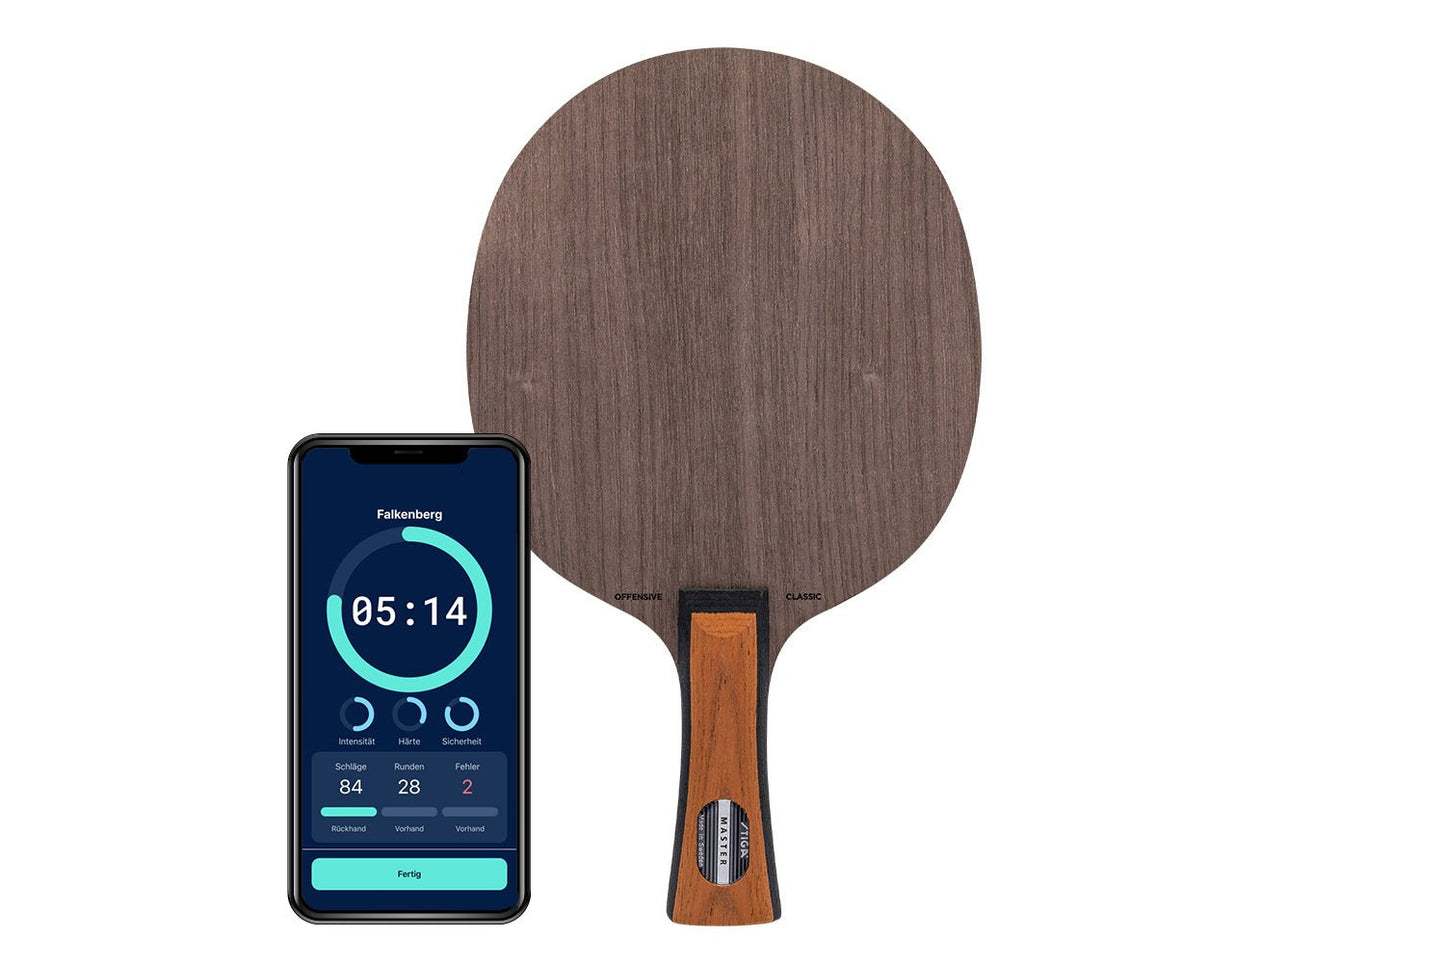 Stiga Offensive Classic Tischtennisschläger mit konkaven Griff und Smartphone zeigt Daten des Schlägers vor weißem Hintergrund